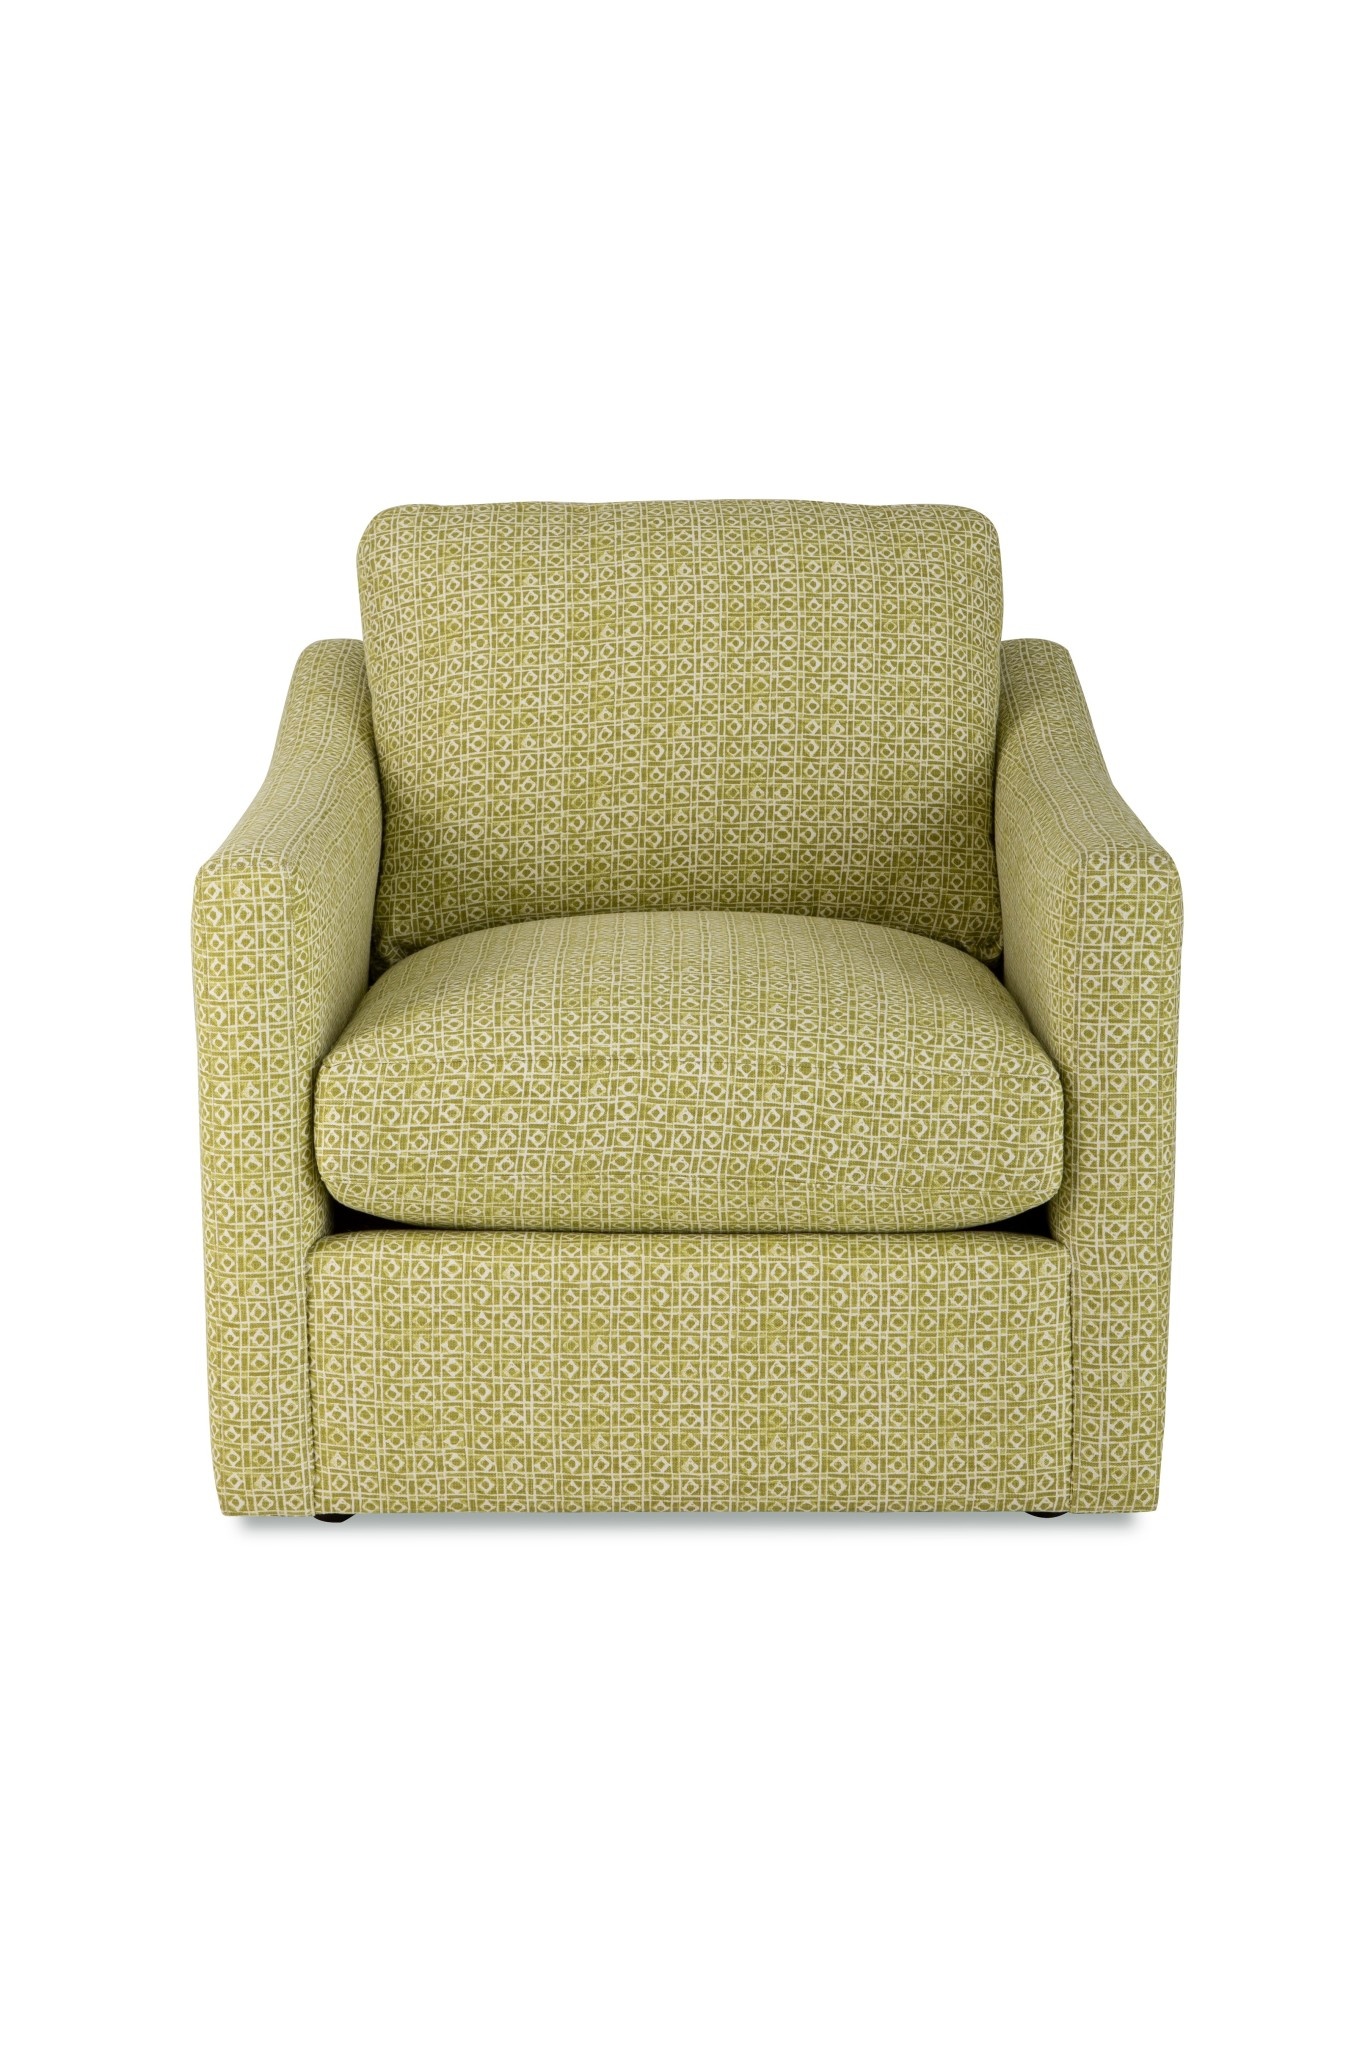 Craftmaster Furniture P726710BD Paula Deen Chair